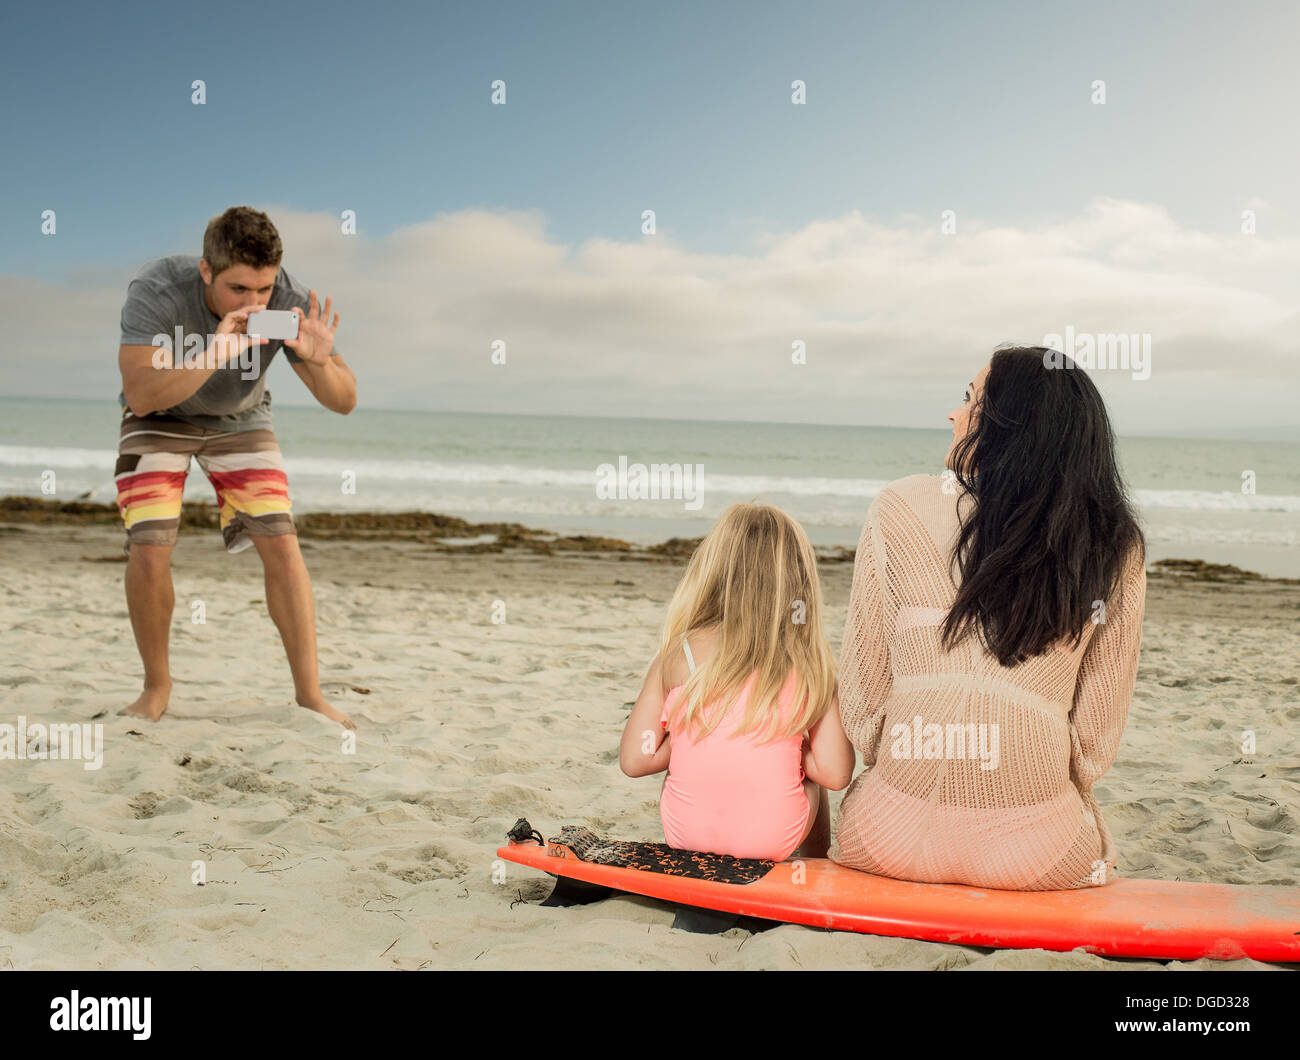 Mann, die Familie als das sitzen auf einem Surfbrett zu fotografieren Stockfoto